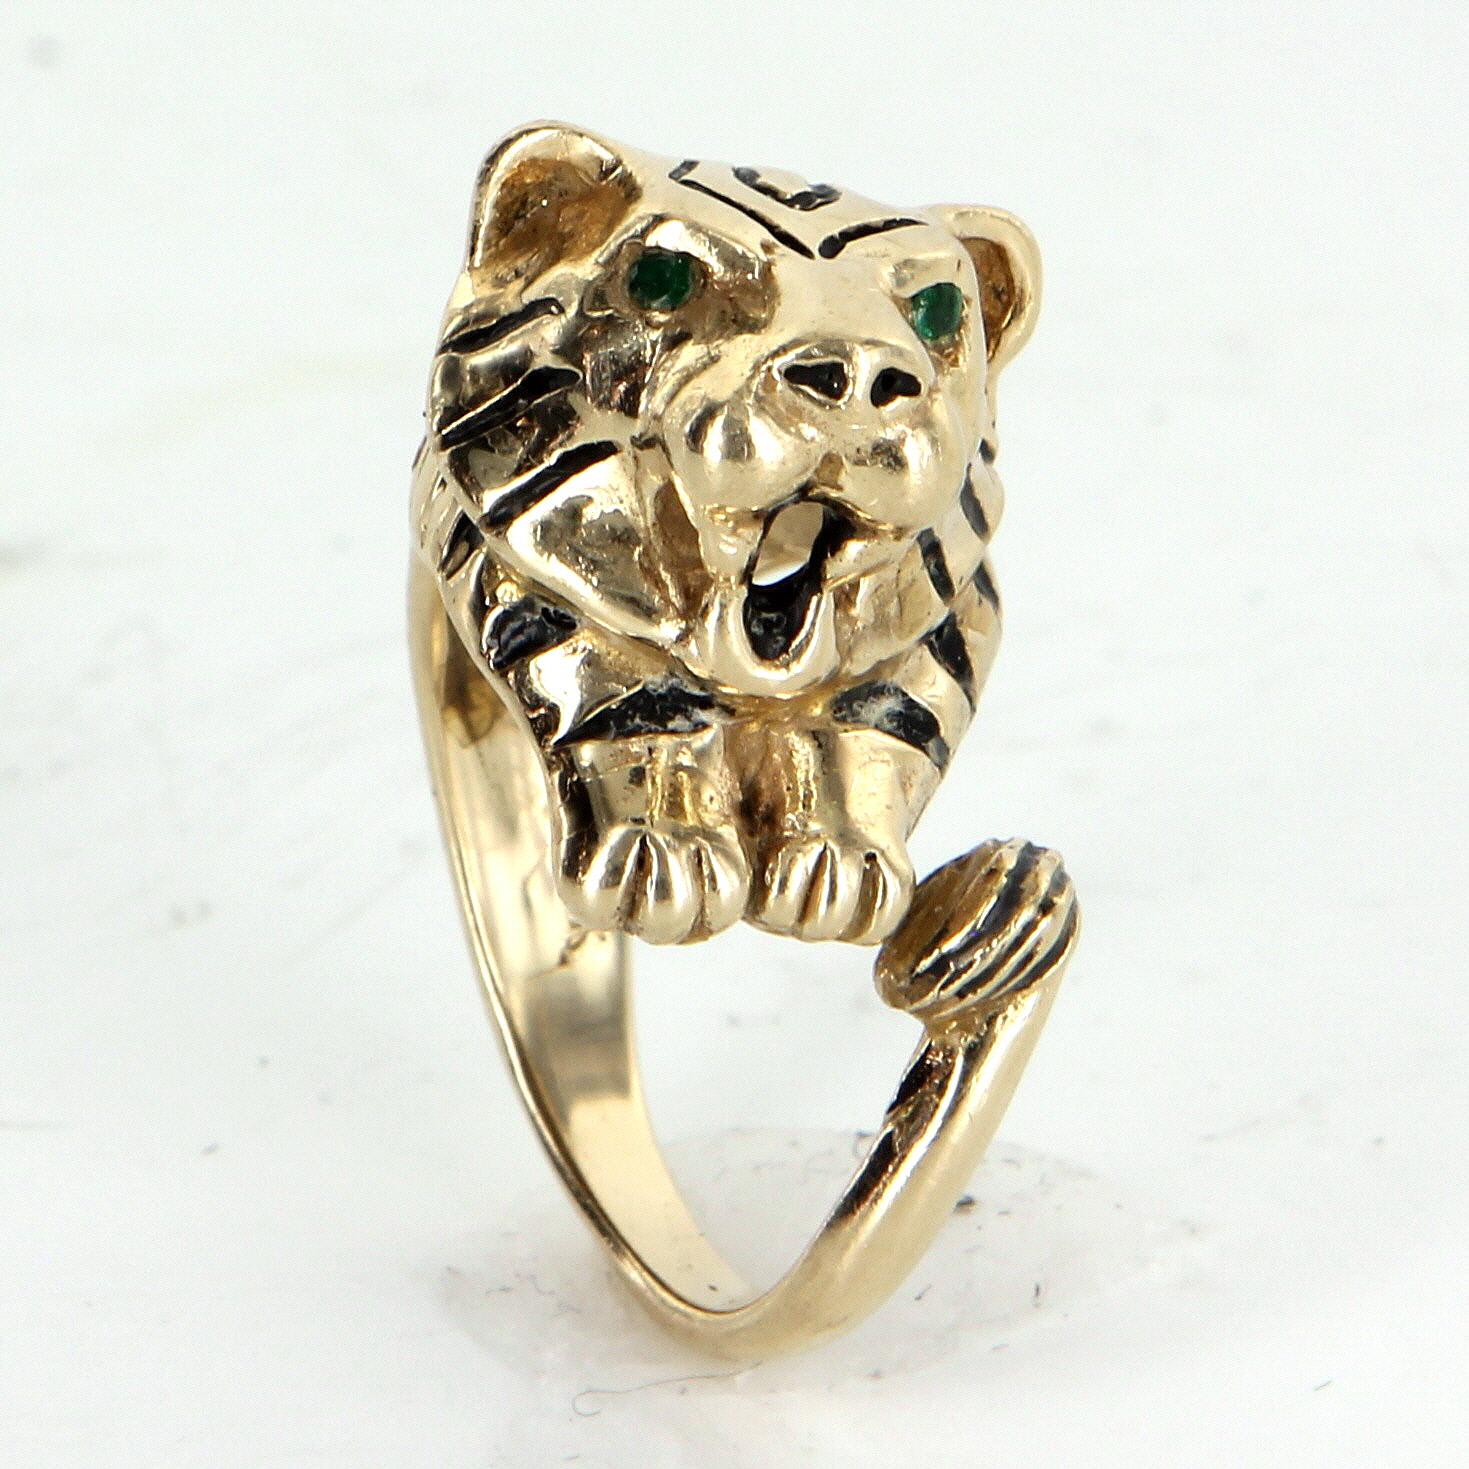 Fein gearbeiteter Ring mit bengalischem Tiger aus 14 Karat Gelbgold. 

In die Augen sind Smaragde mit einem geschätzten Gesamtwert von 0,06 Karat eingelassen.

Der Ring wiegt 19 Gramm und hat ein schönes, schweres Gewicht, das an der Hand gut zur